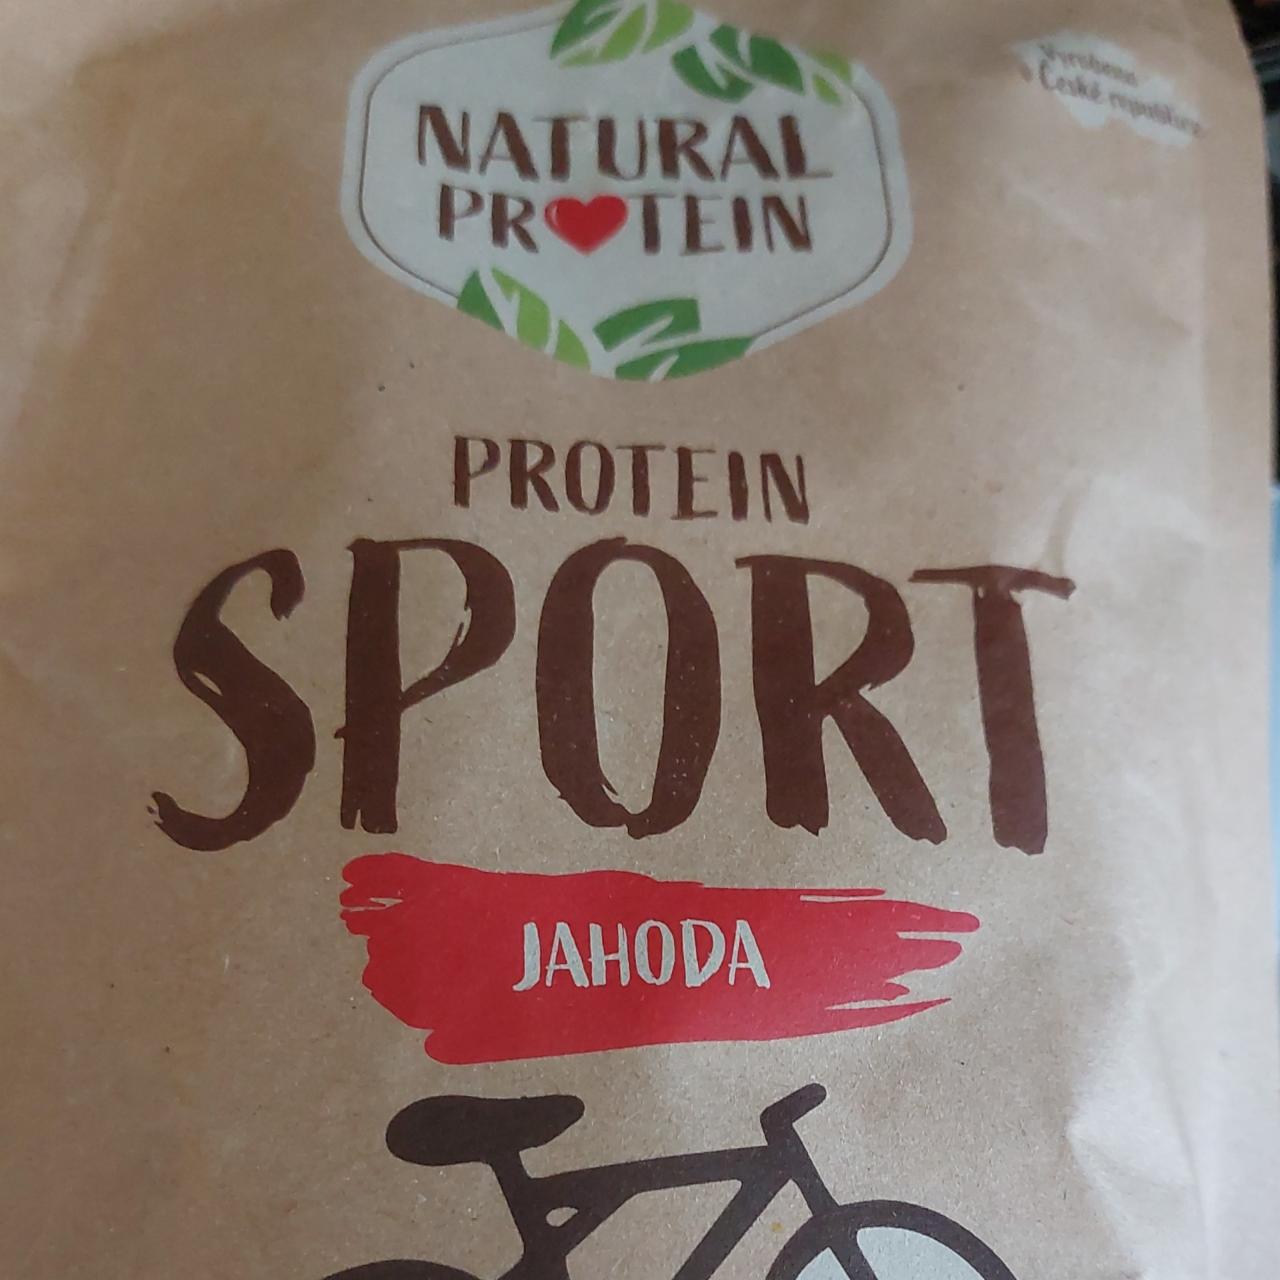 Fotografie - Protein Sport Jahoda Natural protein